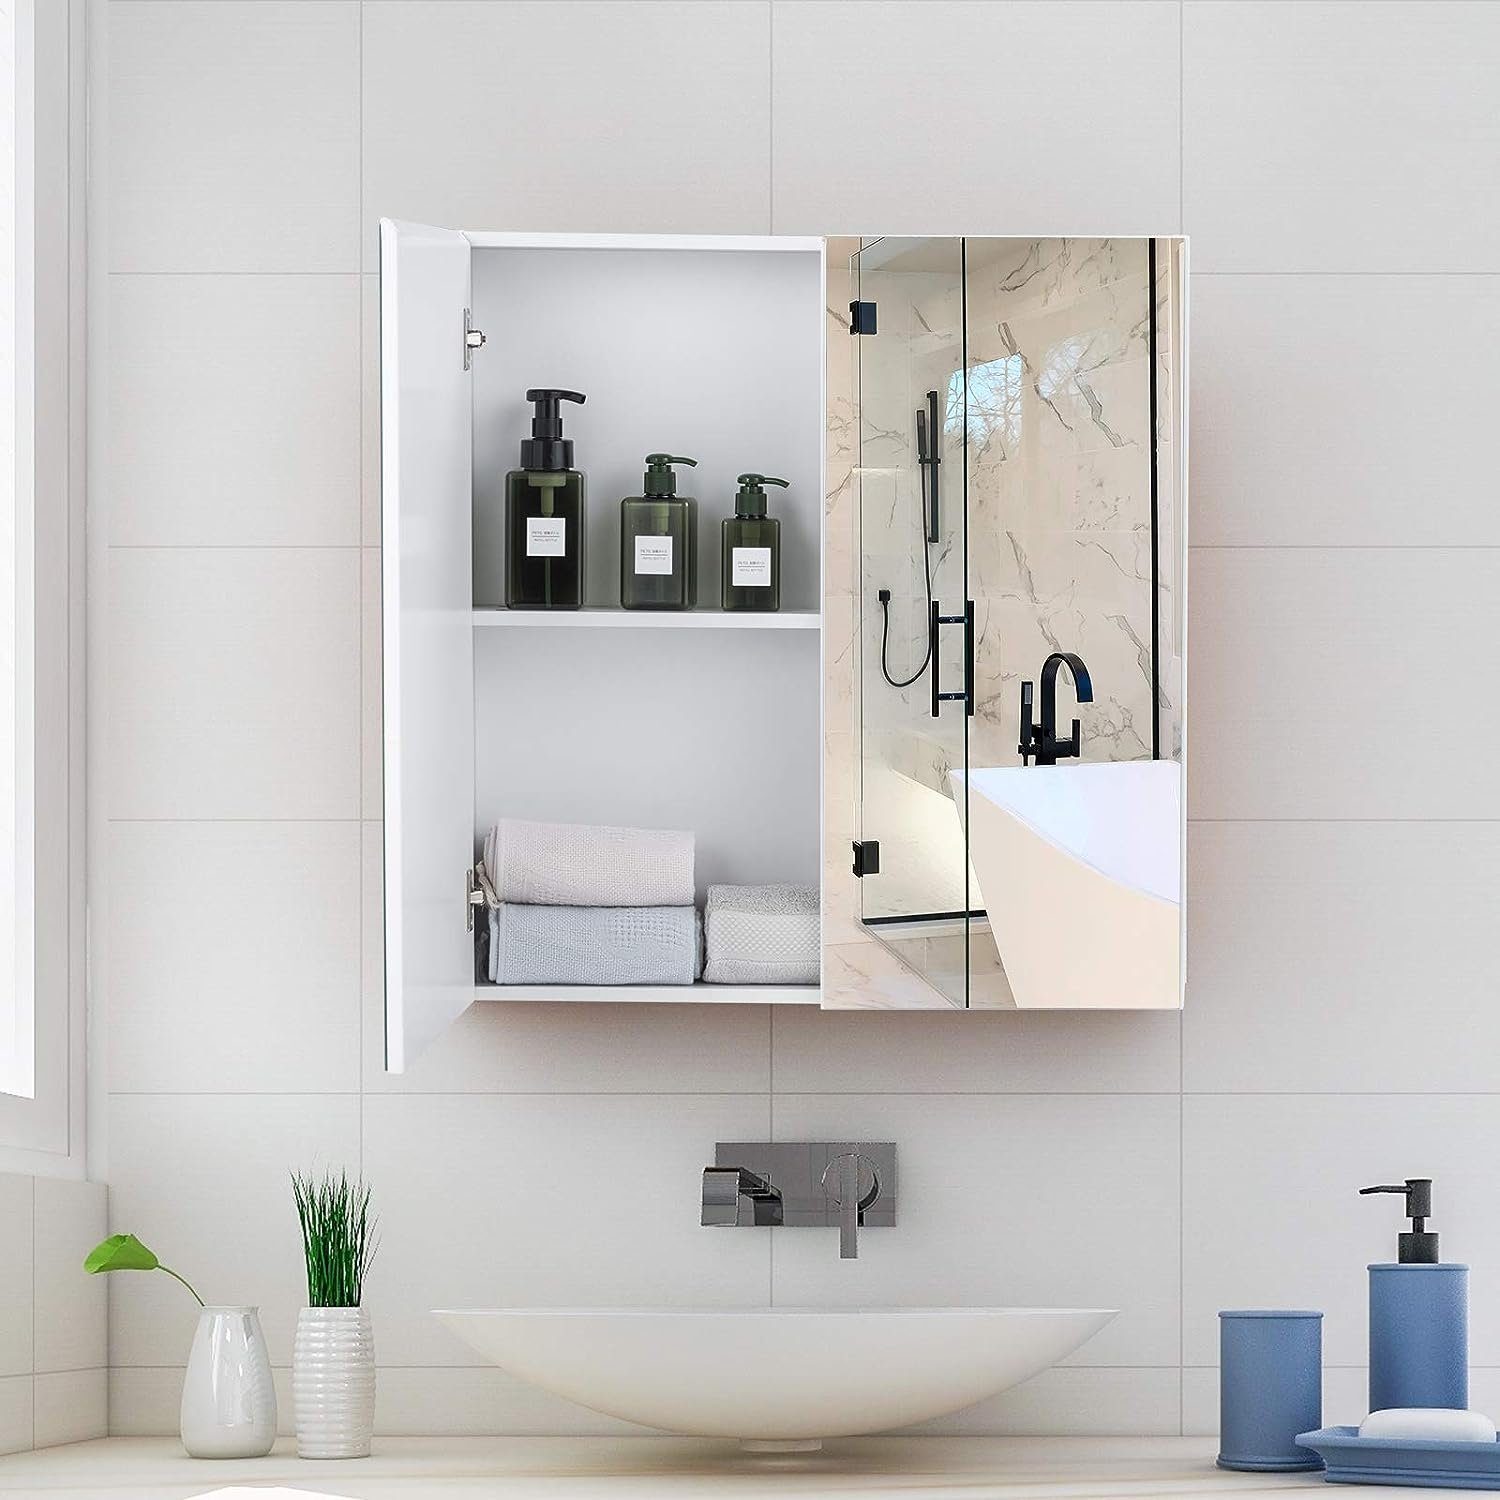 11,3 x Türen, x 62 cm 65 Badezimmerspiegelschrank Spiegelschrank 2 mit KOMFOTTEU